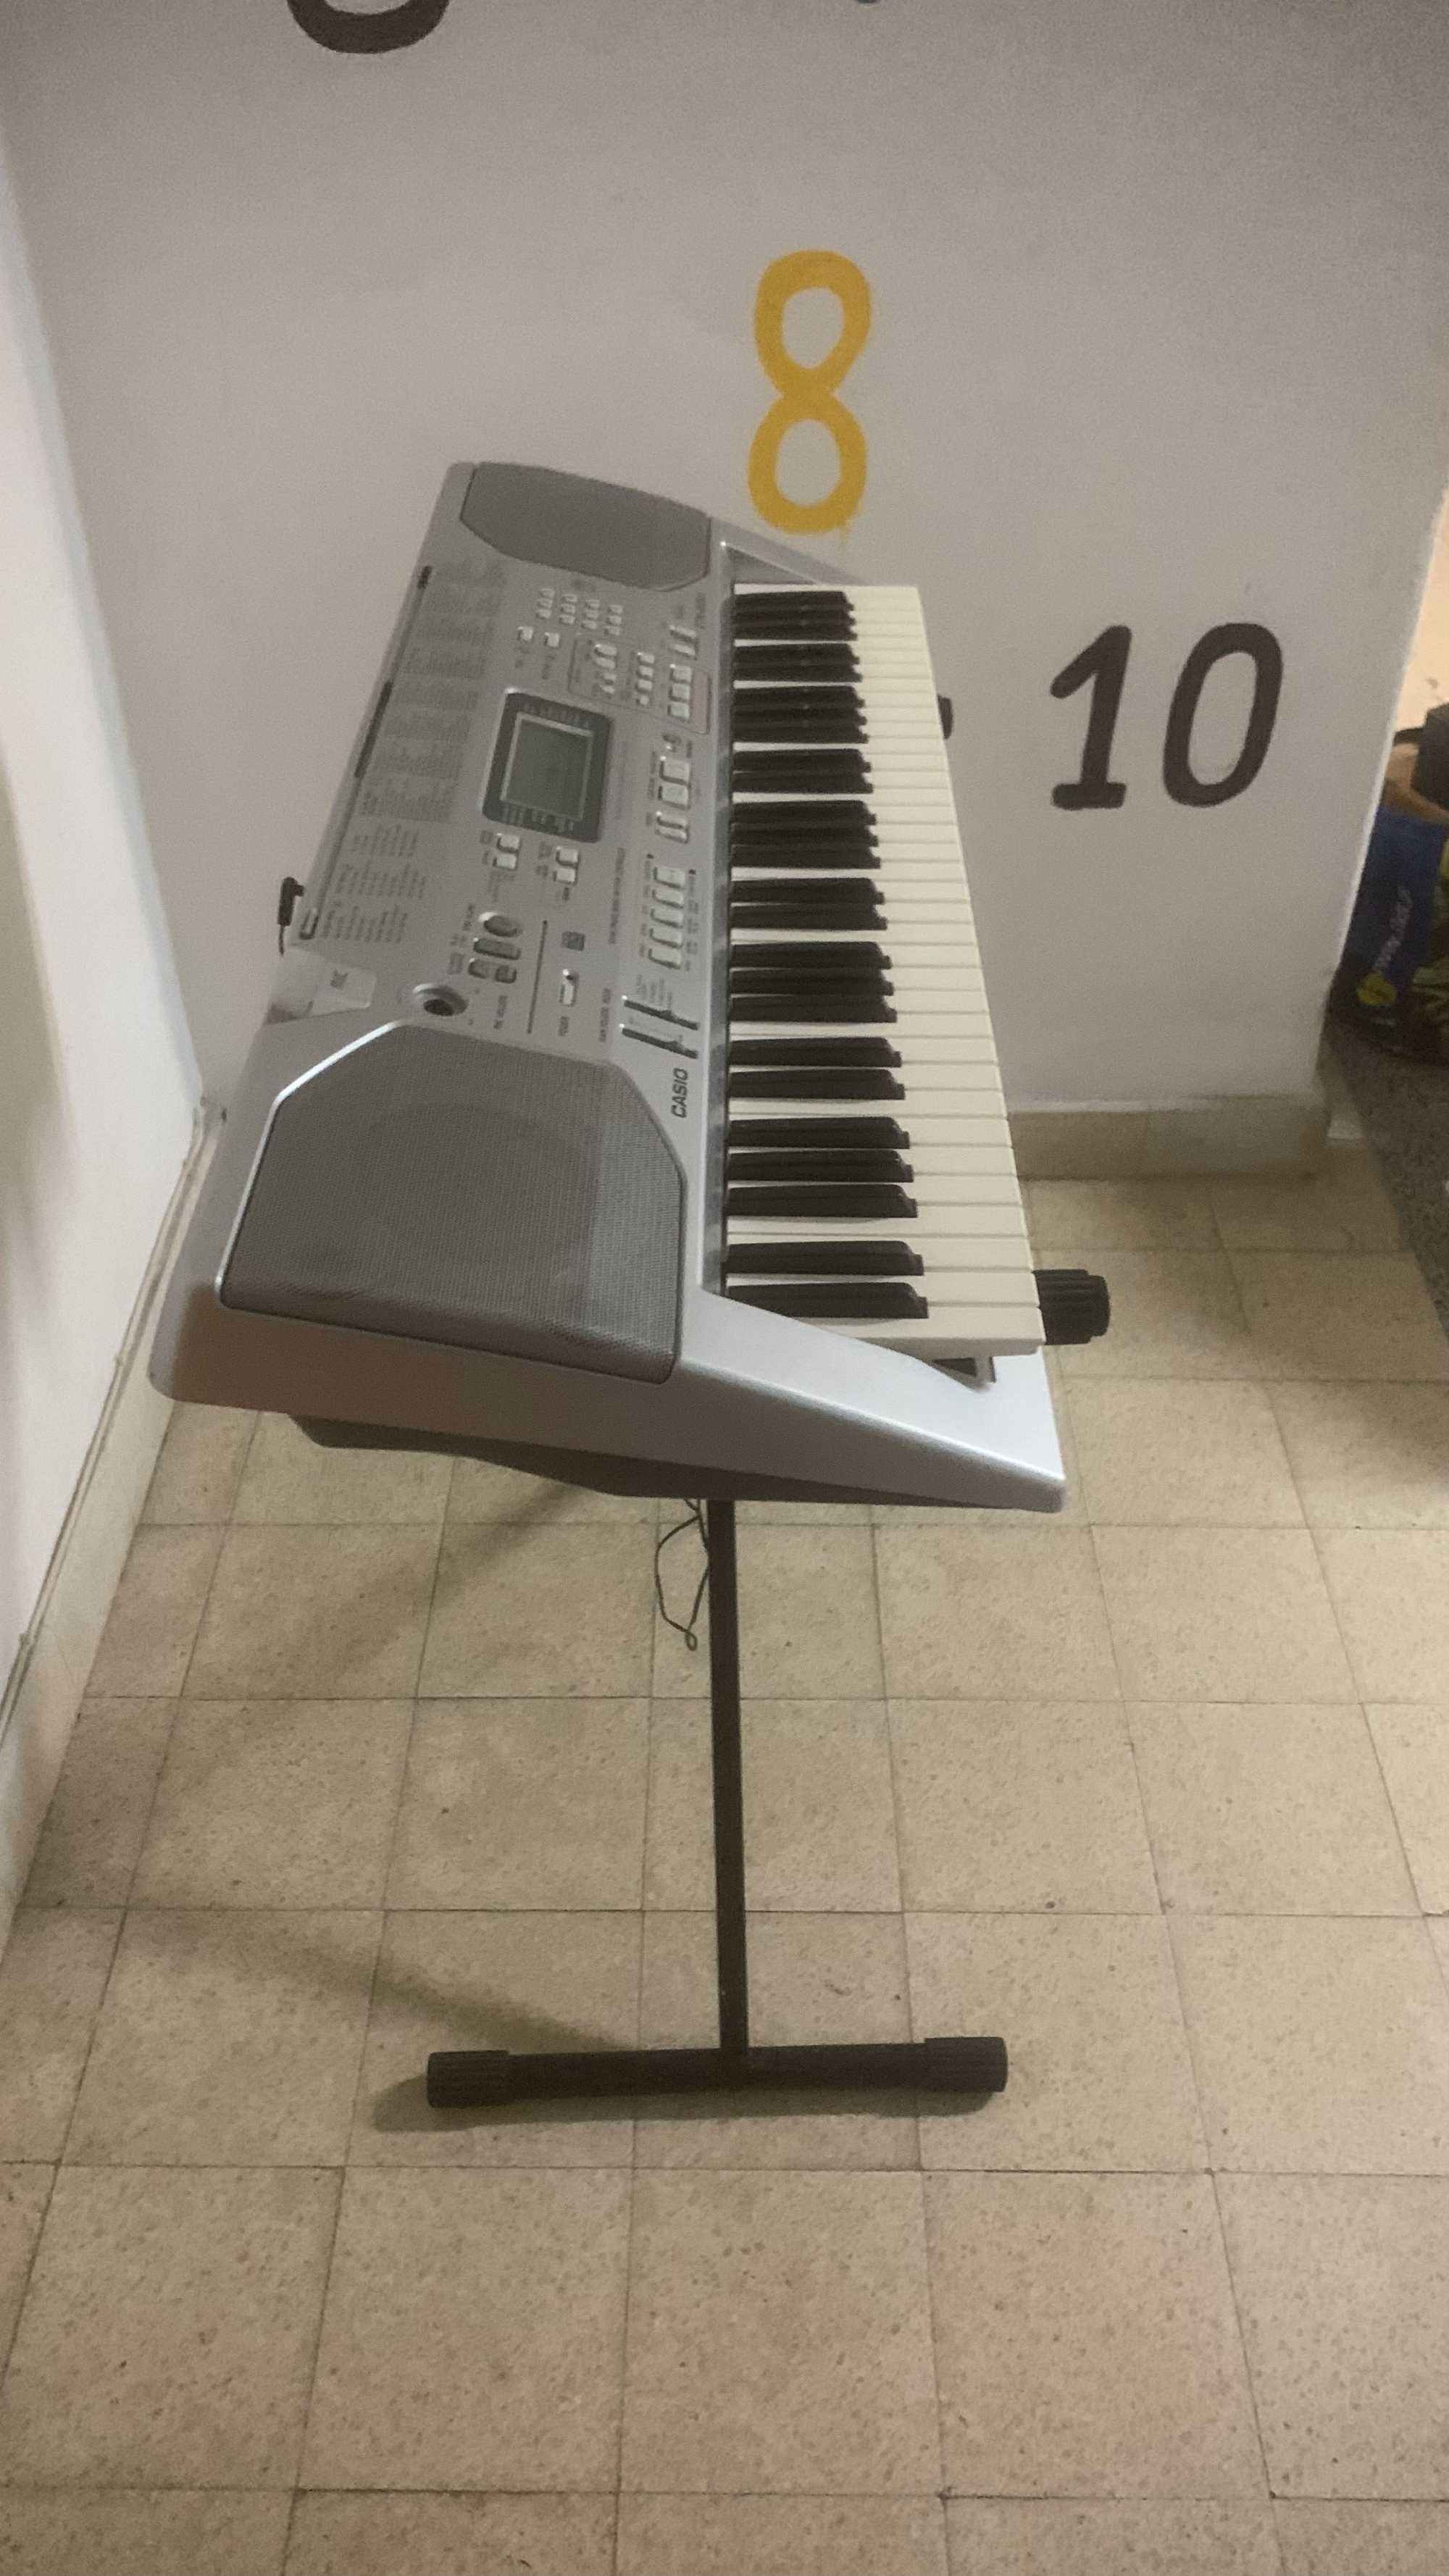 Órgão/Piano Casio CT-X800